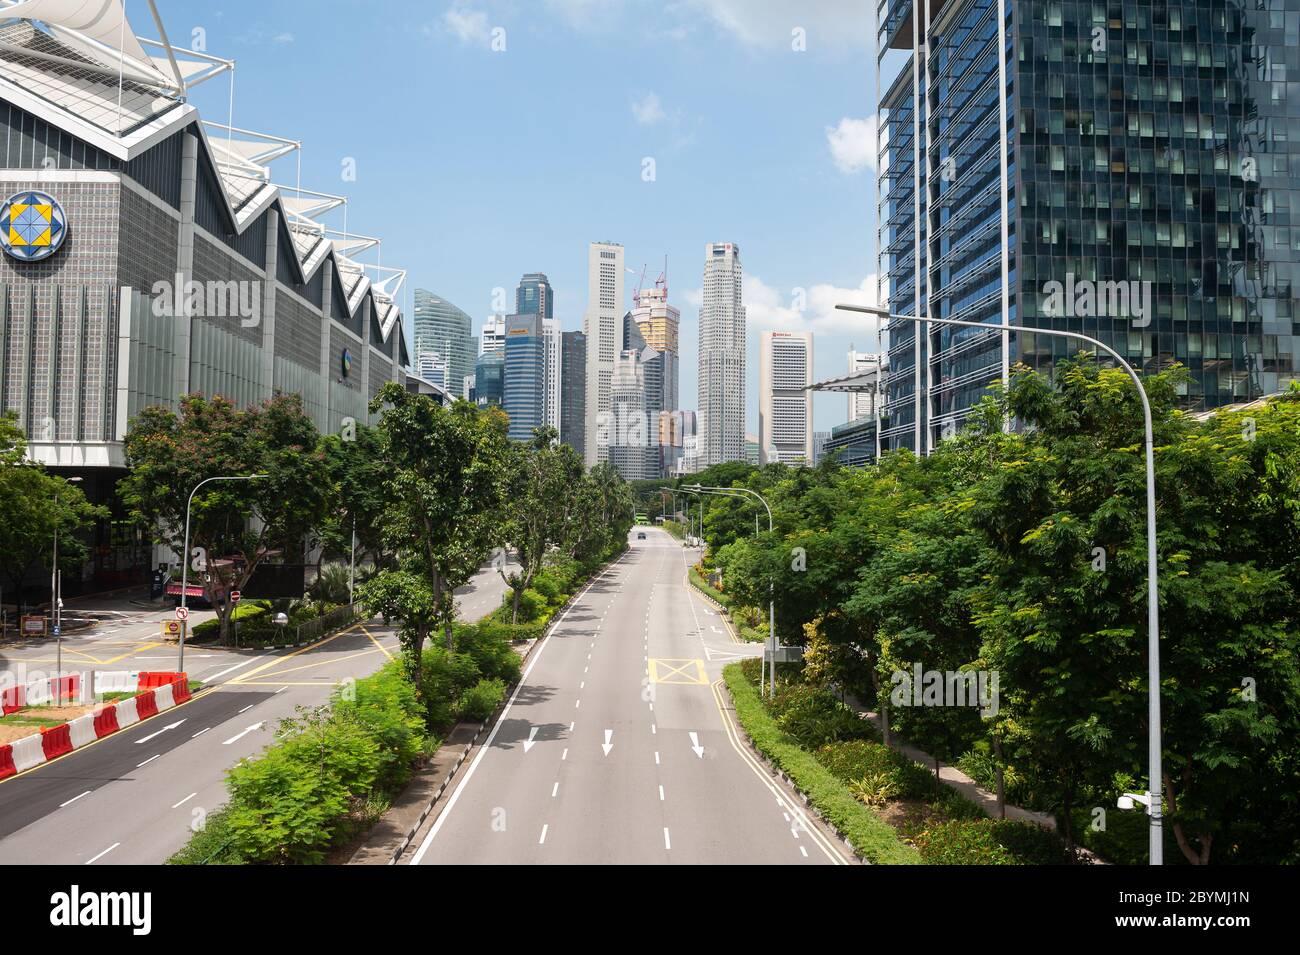 05.05.2020, Singapur, Singapur - leere Straßen und kaum Verkehr im Stadtzentrum während der Sperrung durch die Koronakrise (Covid-19). Stockfoto